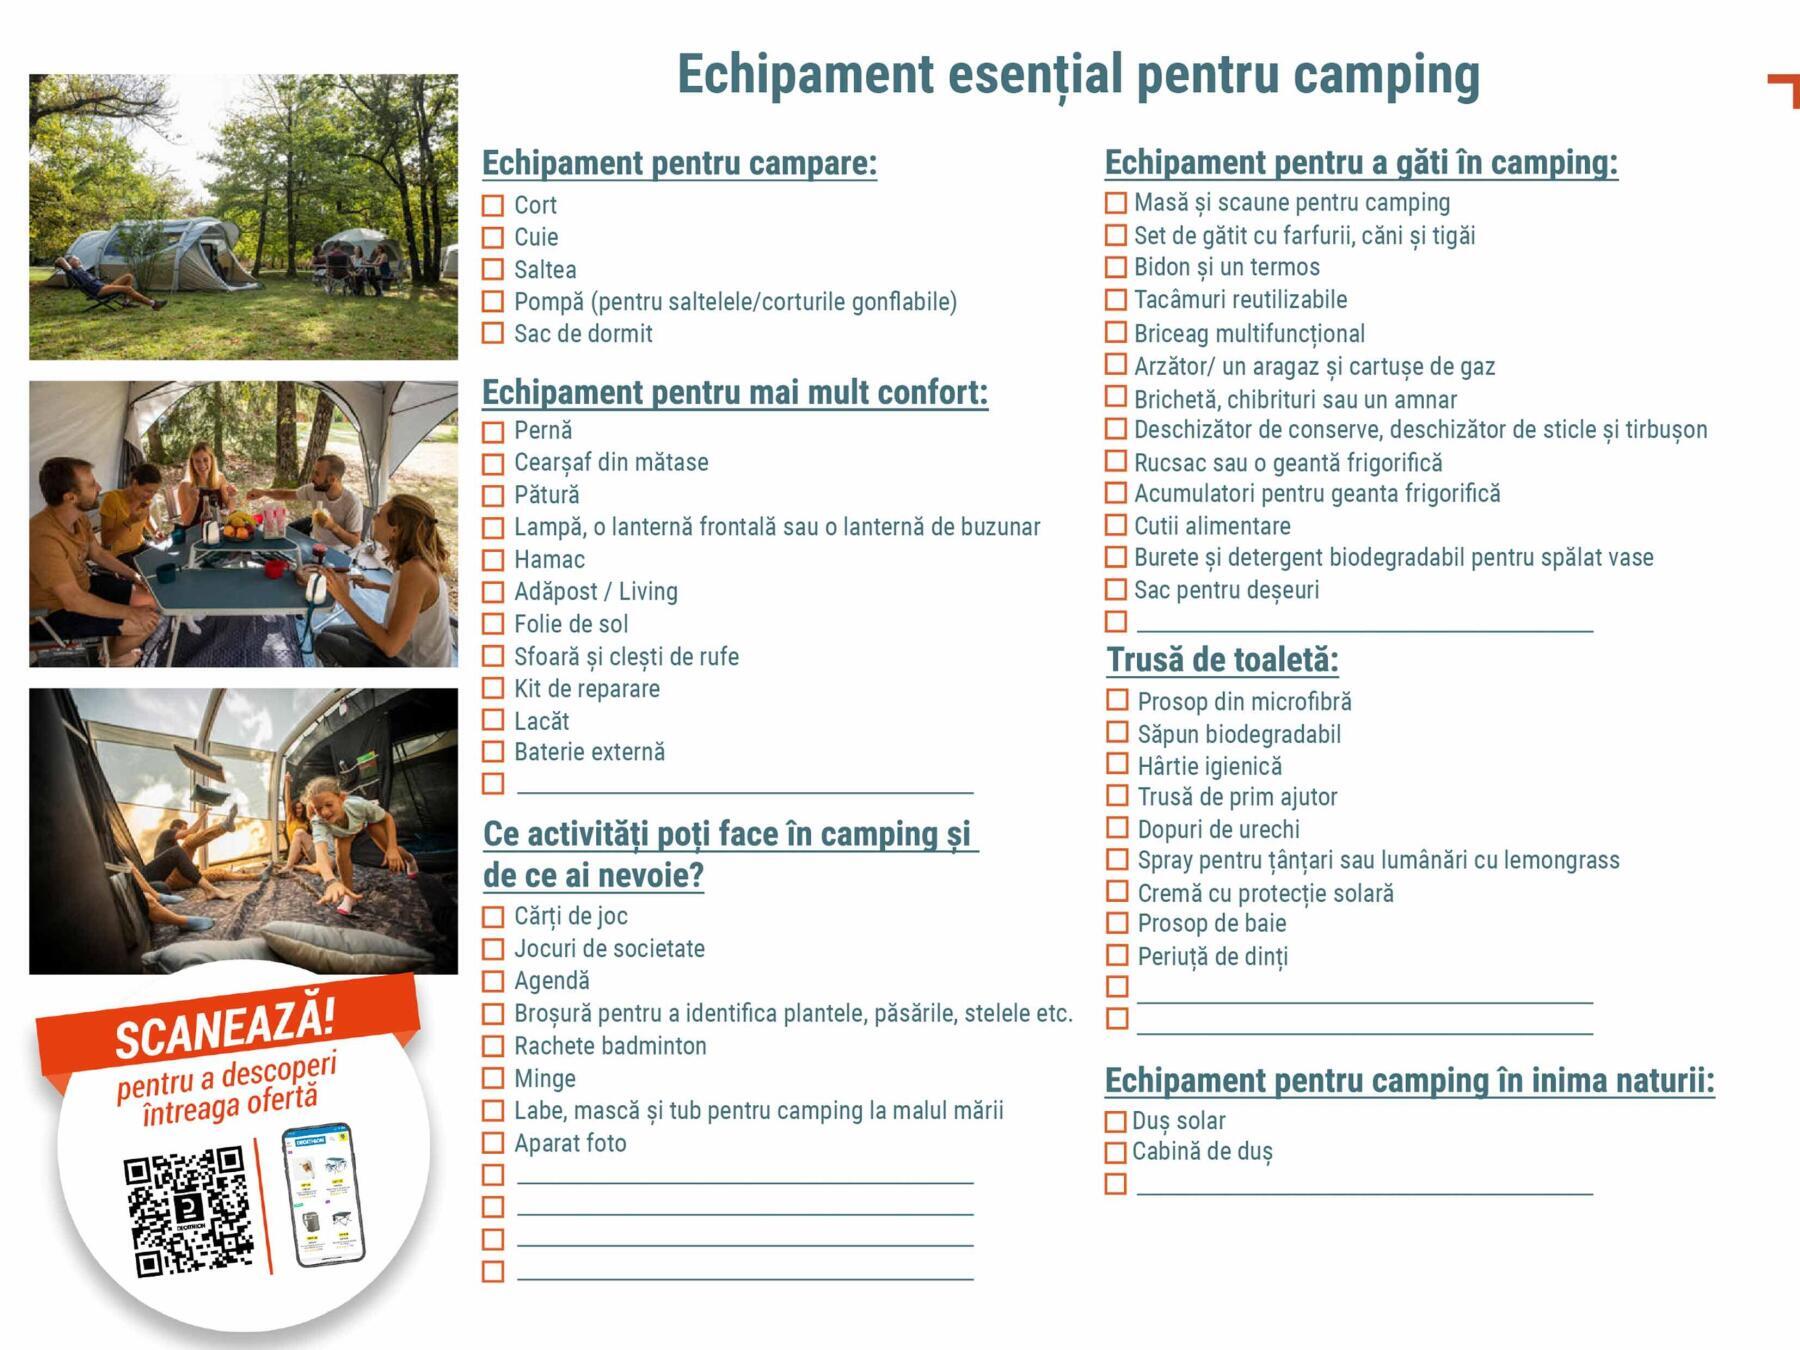 Checklist pentru echipamentul de camping